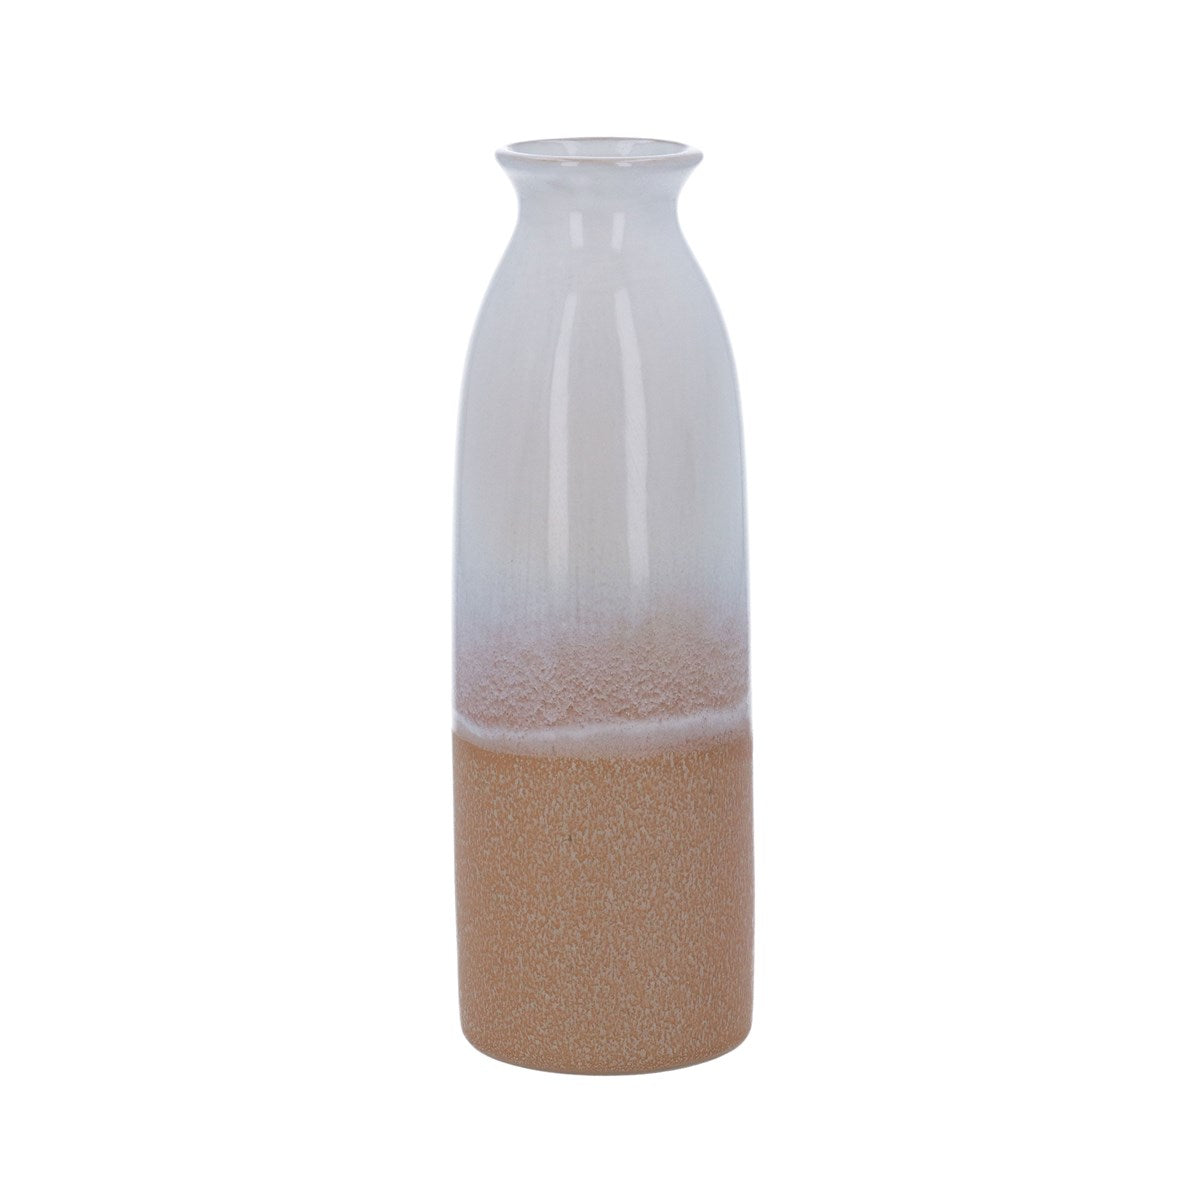 Sand Ceramic Bottle Decorative Vase - Large